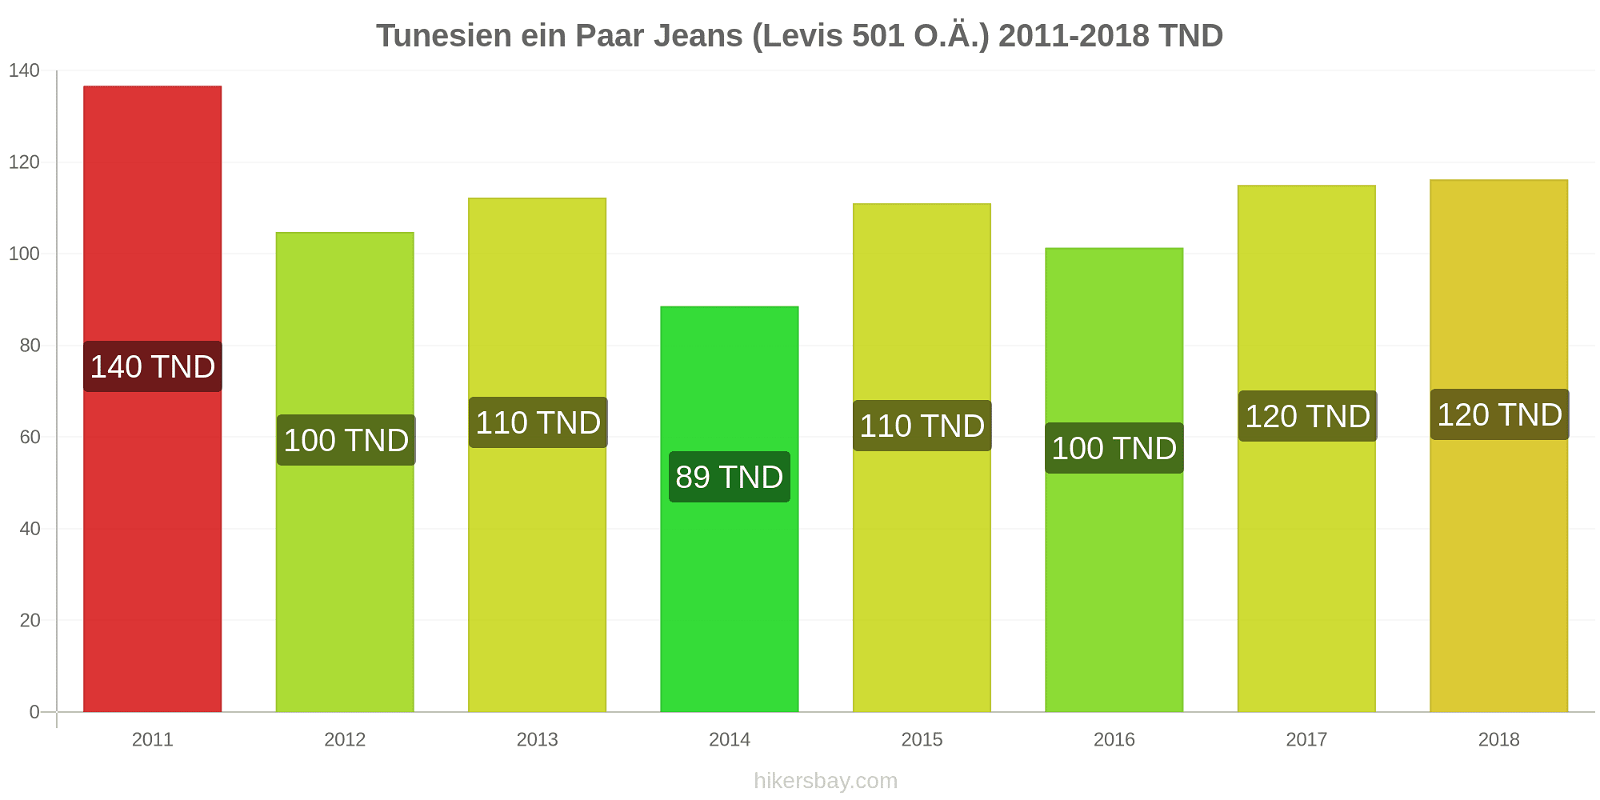 Tunesien Preisänderungen 1 Paar Jeans (Levis 501 oder ähnlich) hikersbay.com